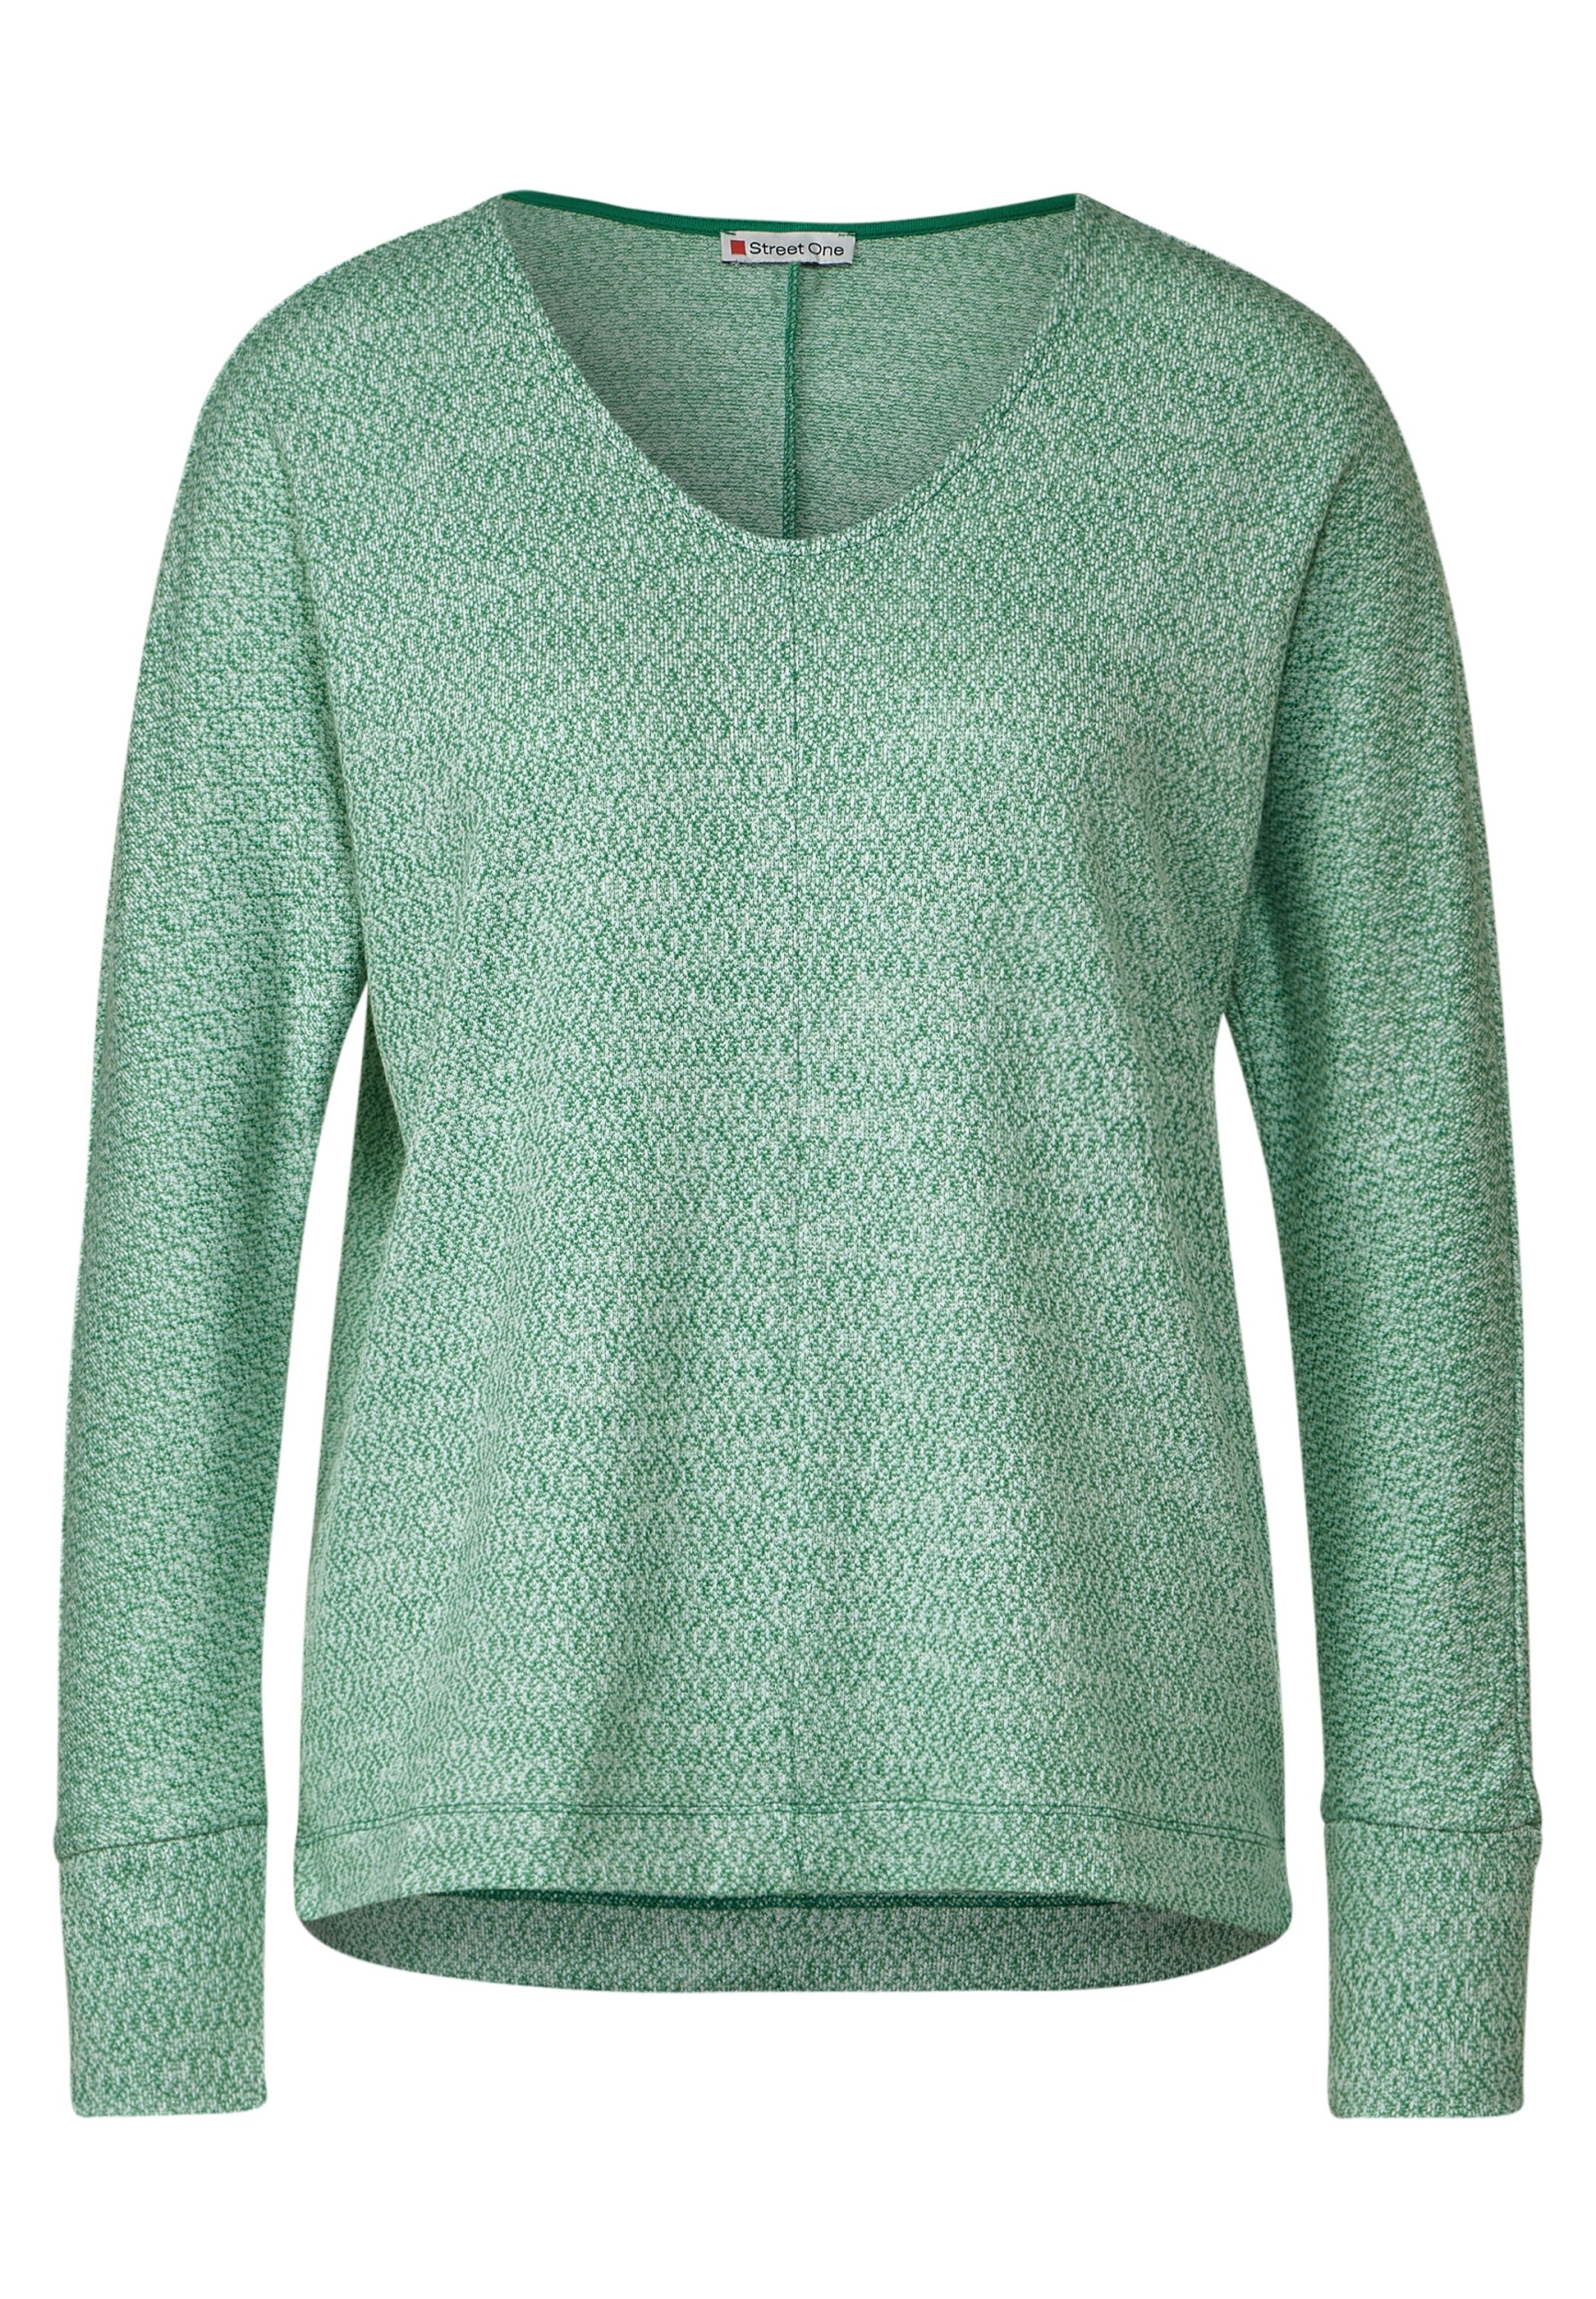 LTD QR 2-color structure shirt | 38 | fresh spring green melange |  A320881-15469-38